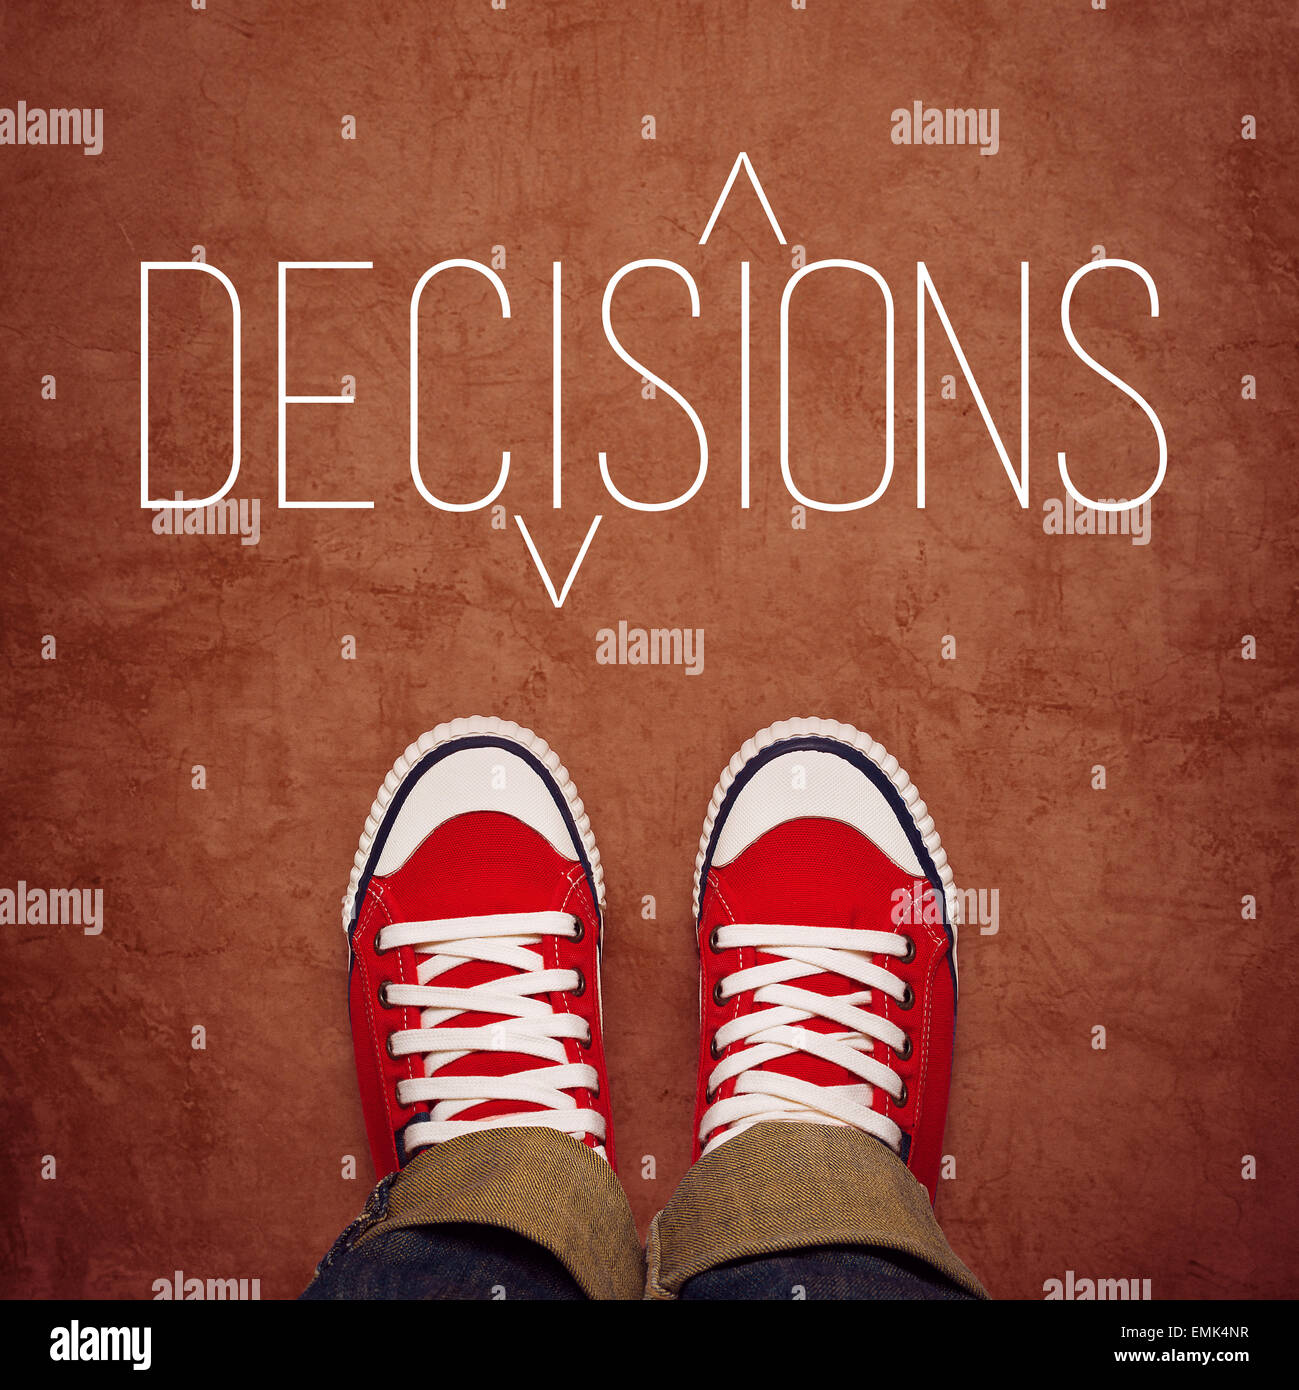 Jugend-Entscheidungsfindung Konzept, Füße in roten Turnschuhen von oben stehend am Boden mit Decisons Titel gedruckt, Draufsicht Stockfoto